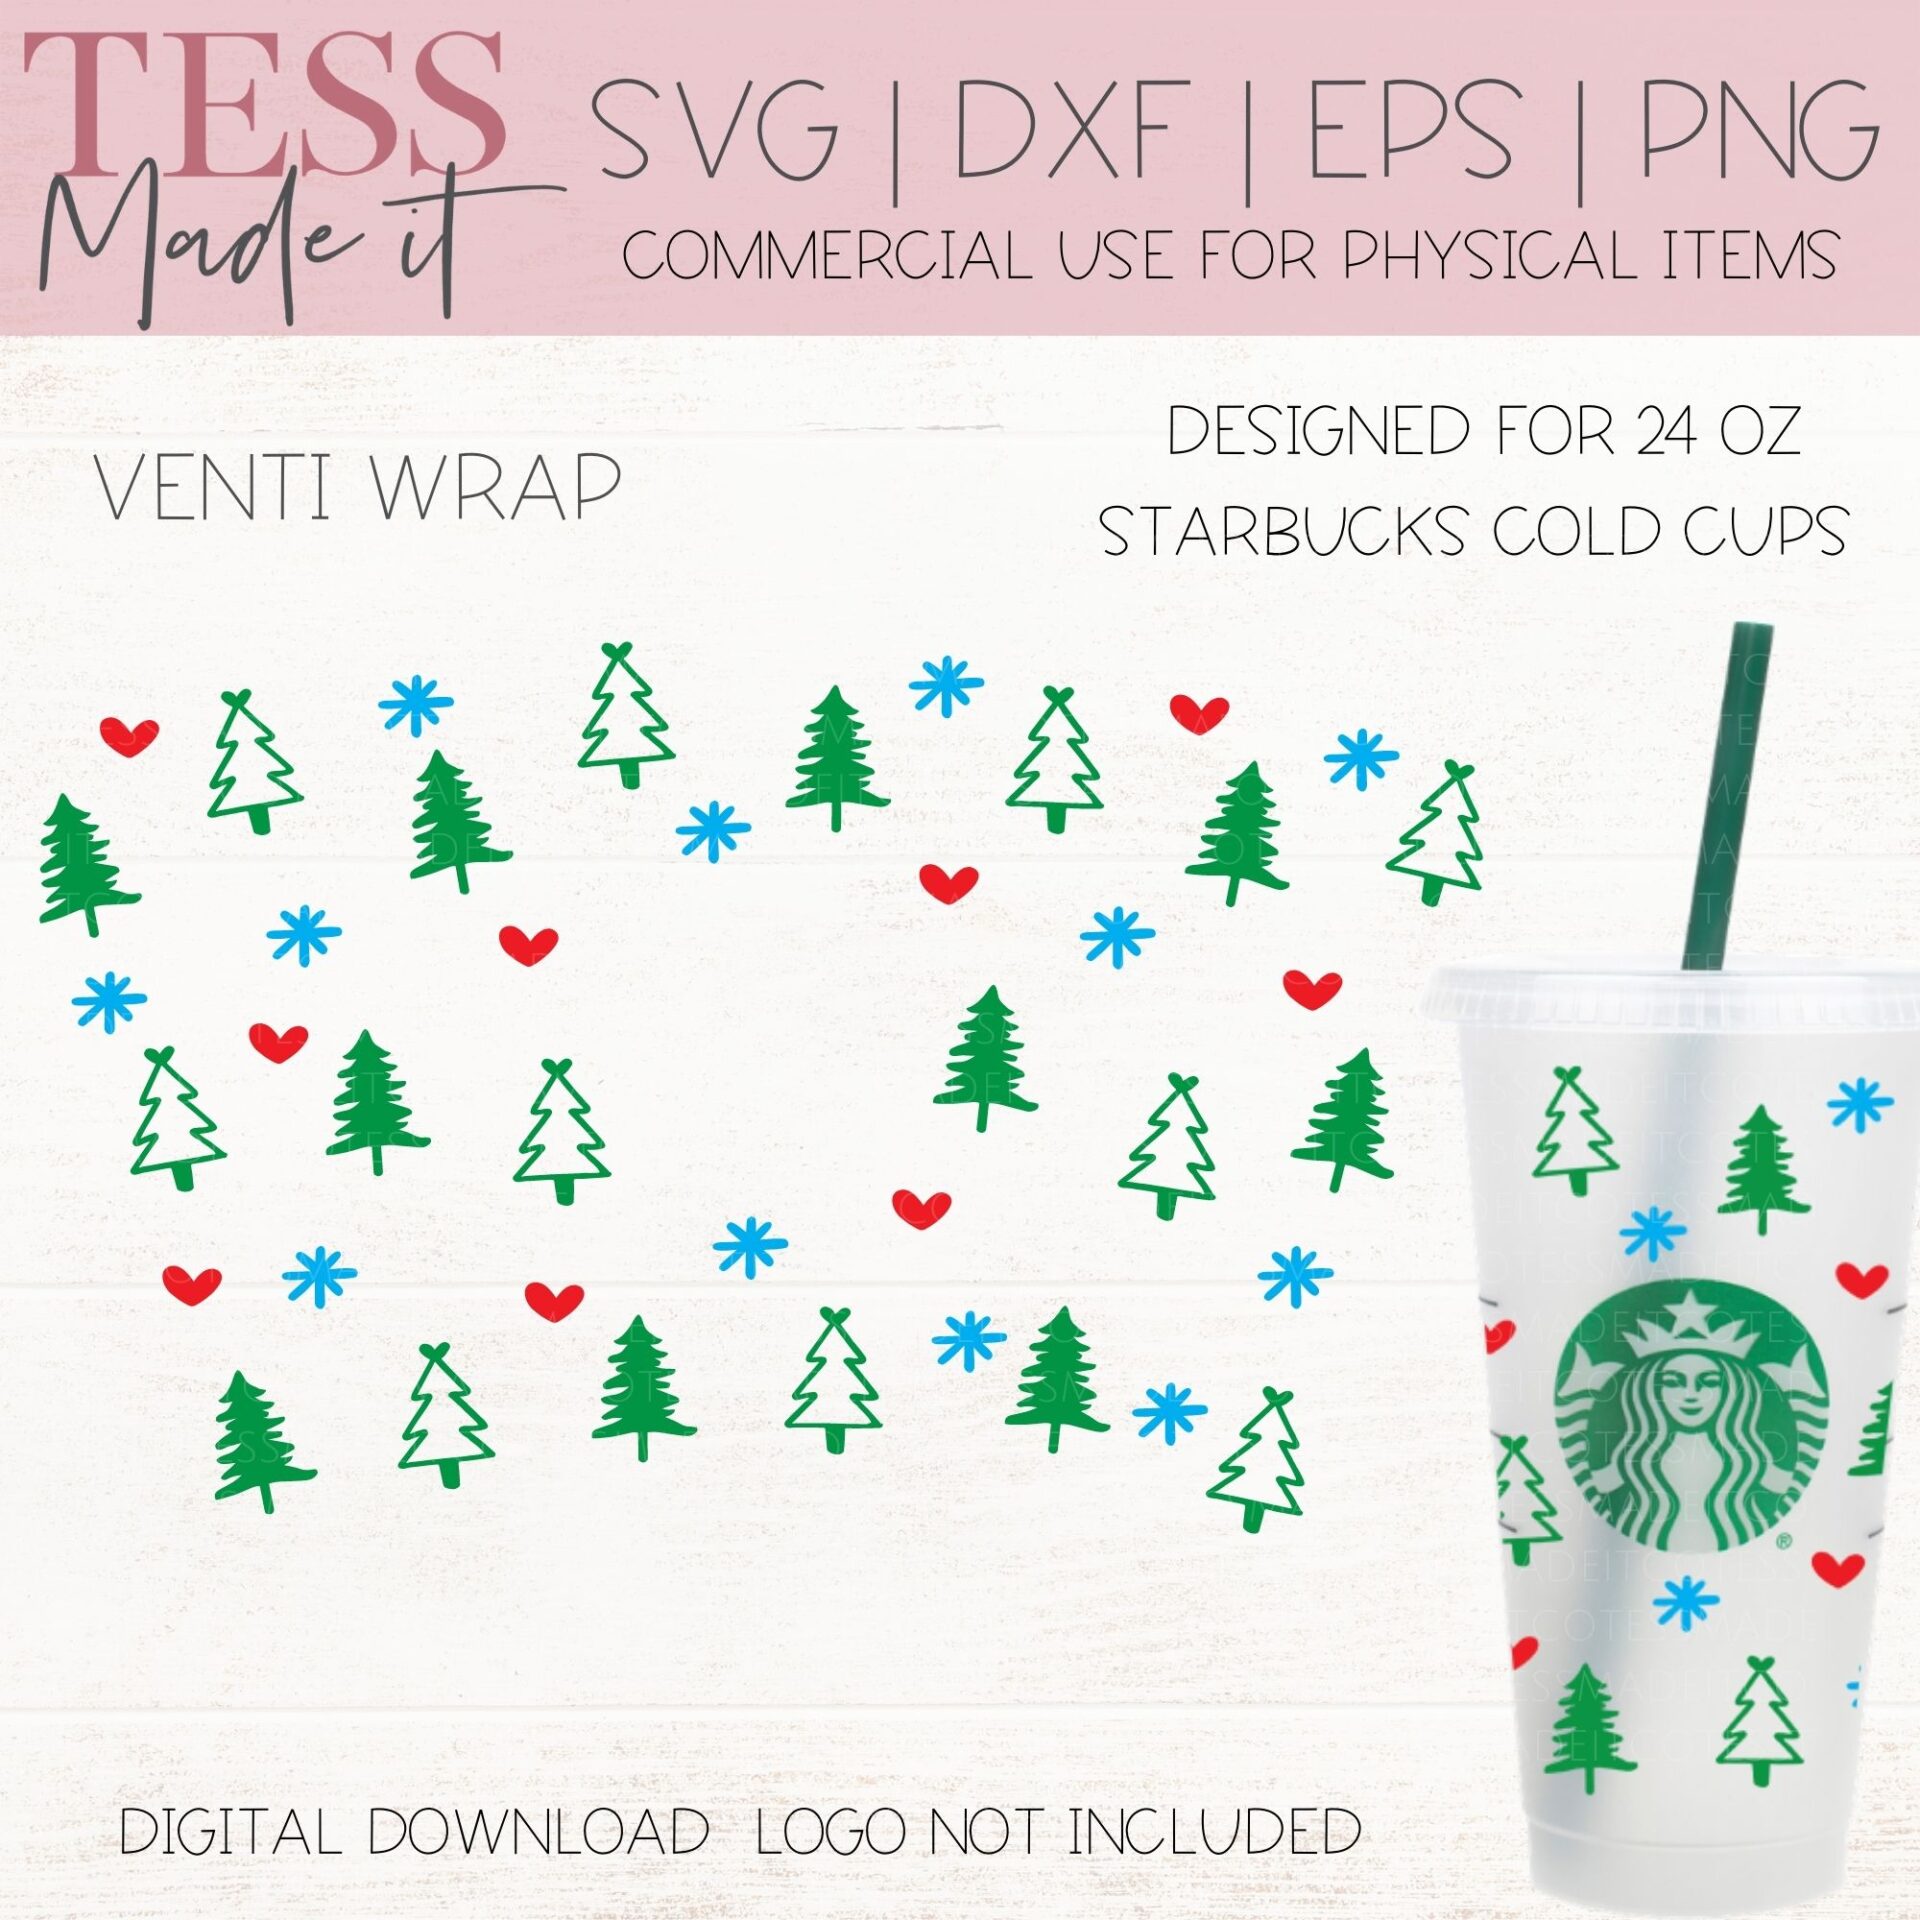 Christmas Lights SVG - Christmas Starbucks Hot Cup SVG - Tess Made It